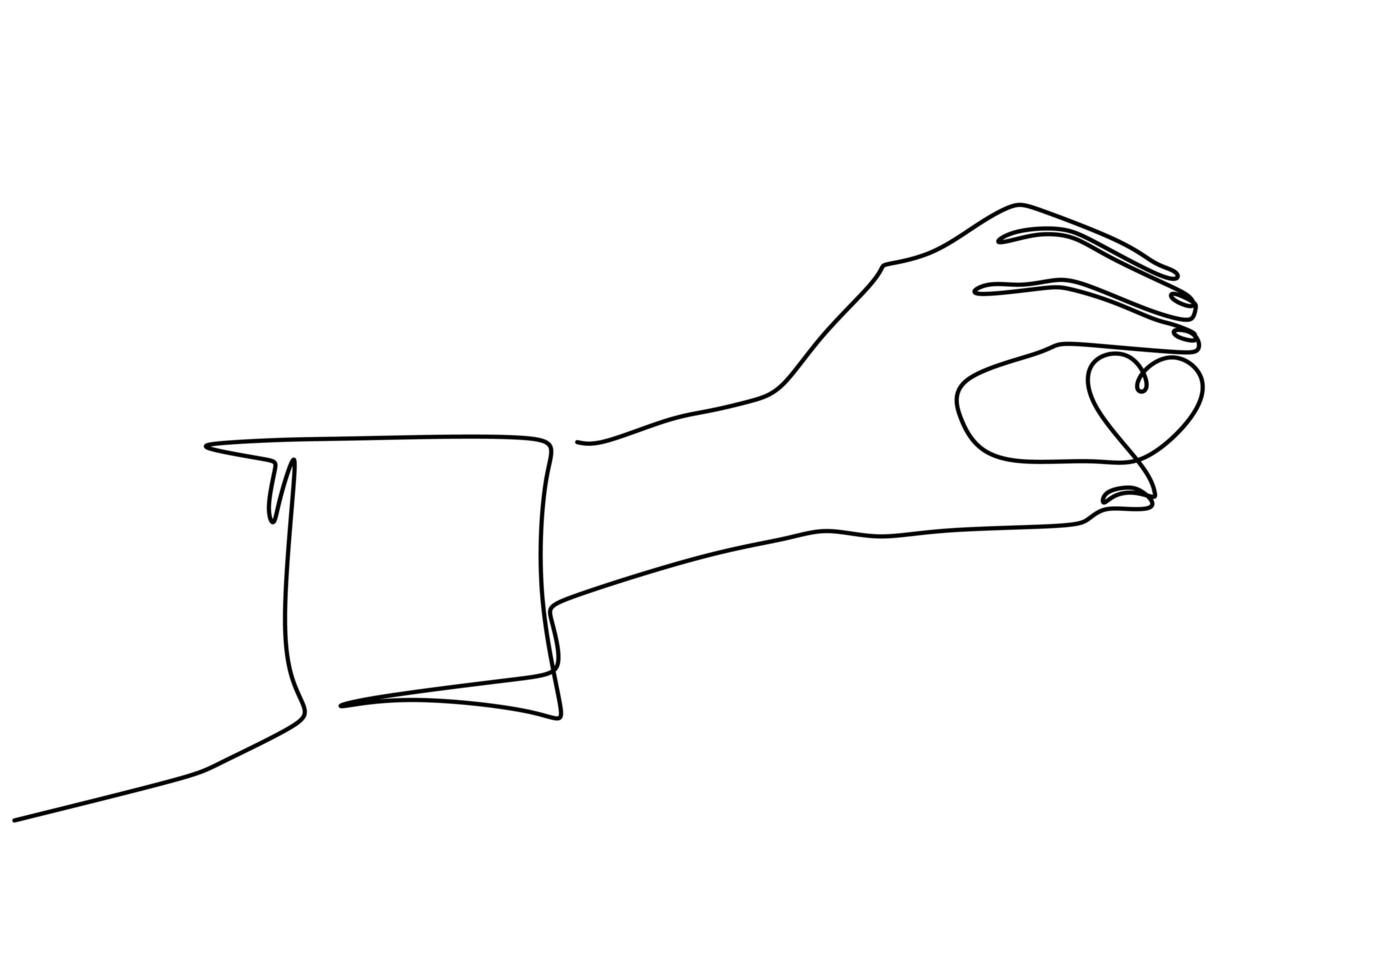 desenho de linha contínua mão segurando um pedaço de coração, ilustração em vetor esboço desenhado de uma mão.